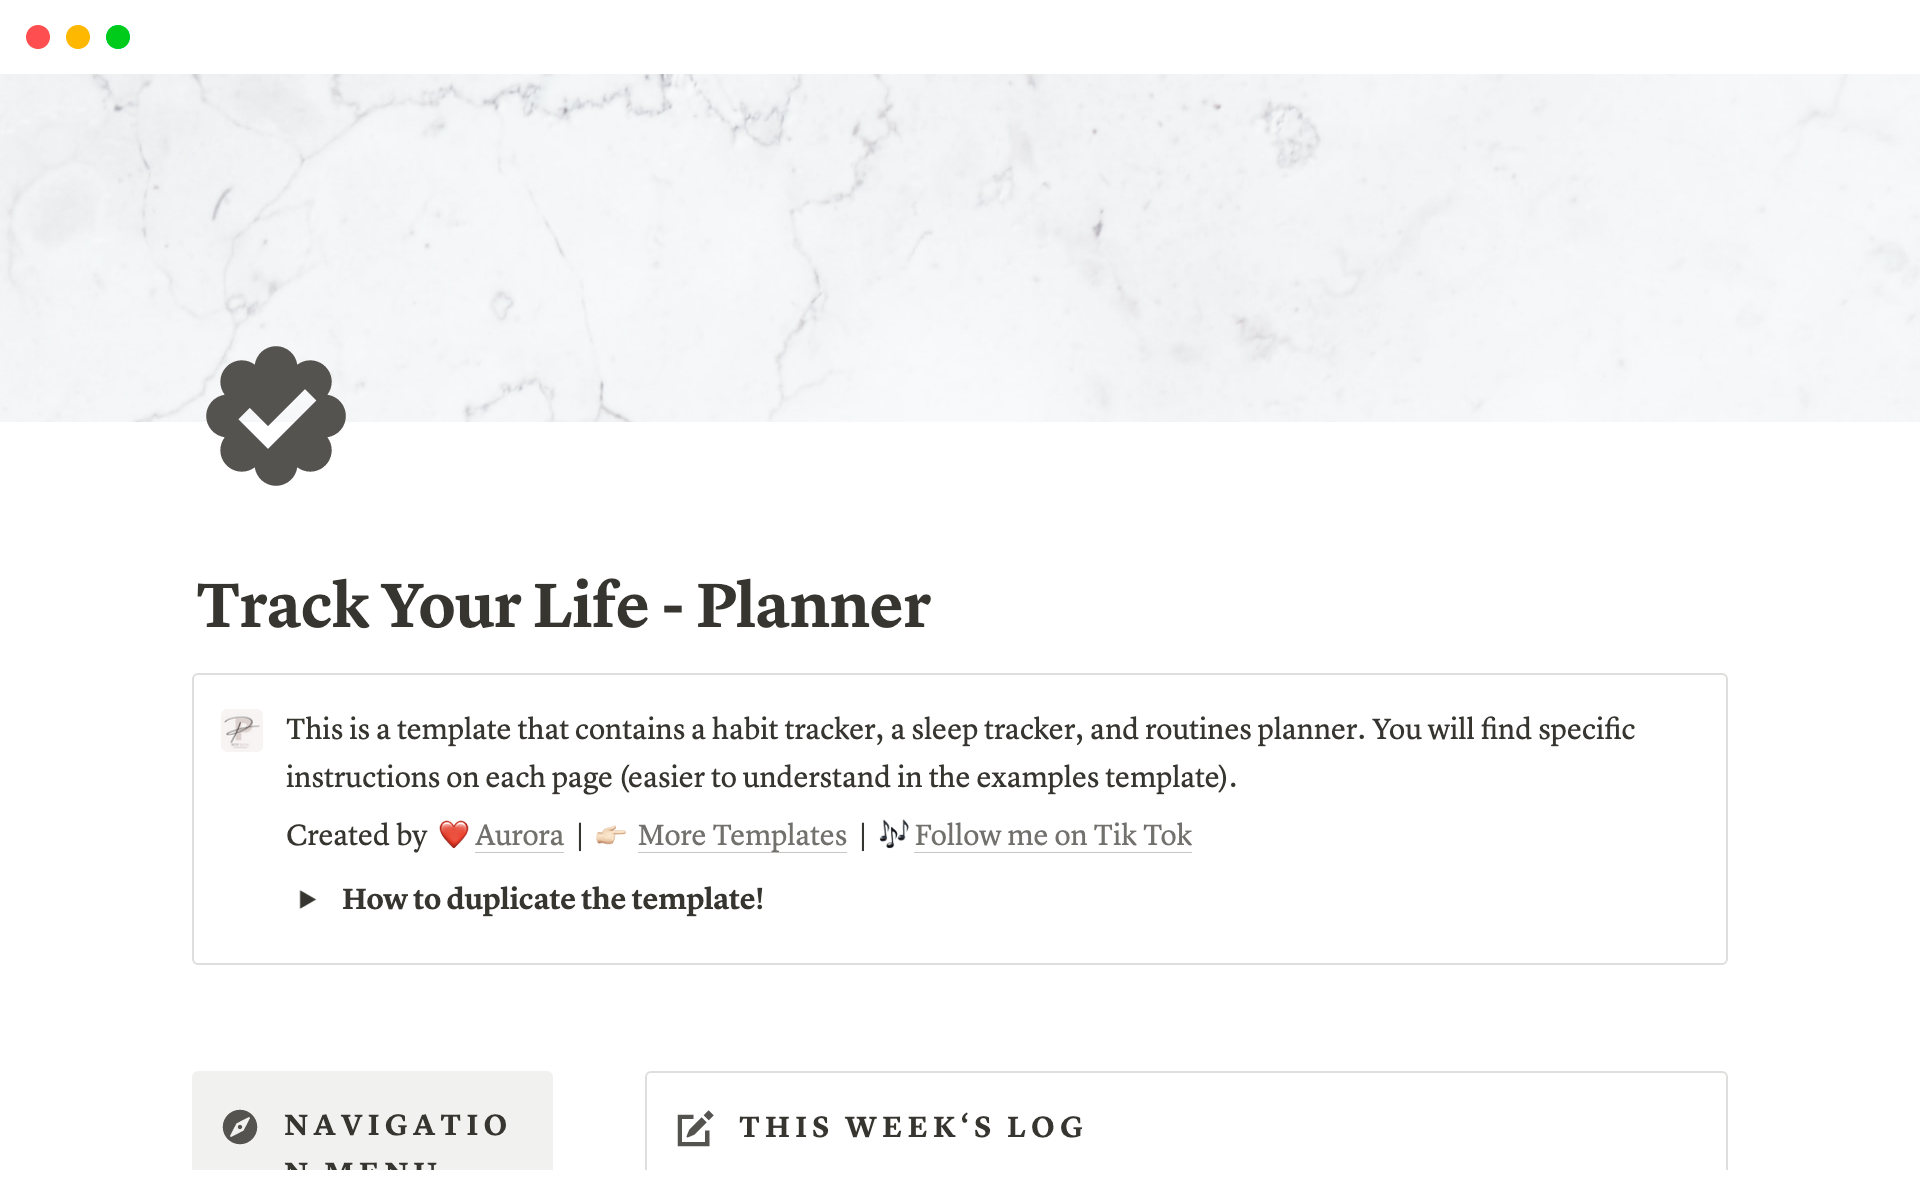 Vista previa de una plantilla para Track Your Life - Planner